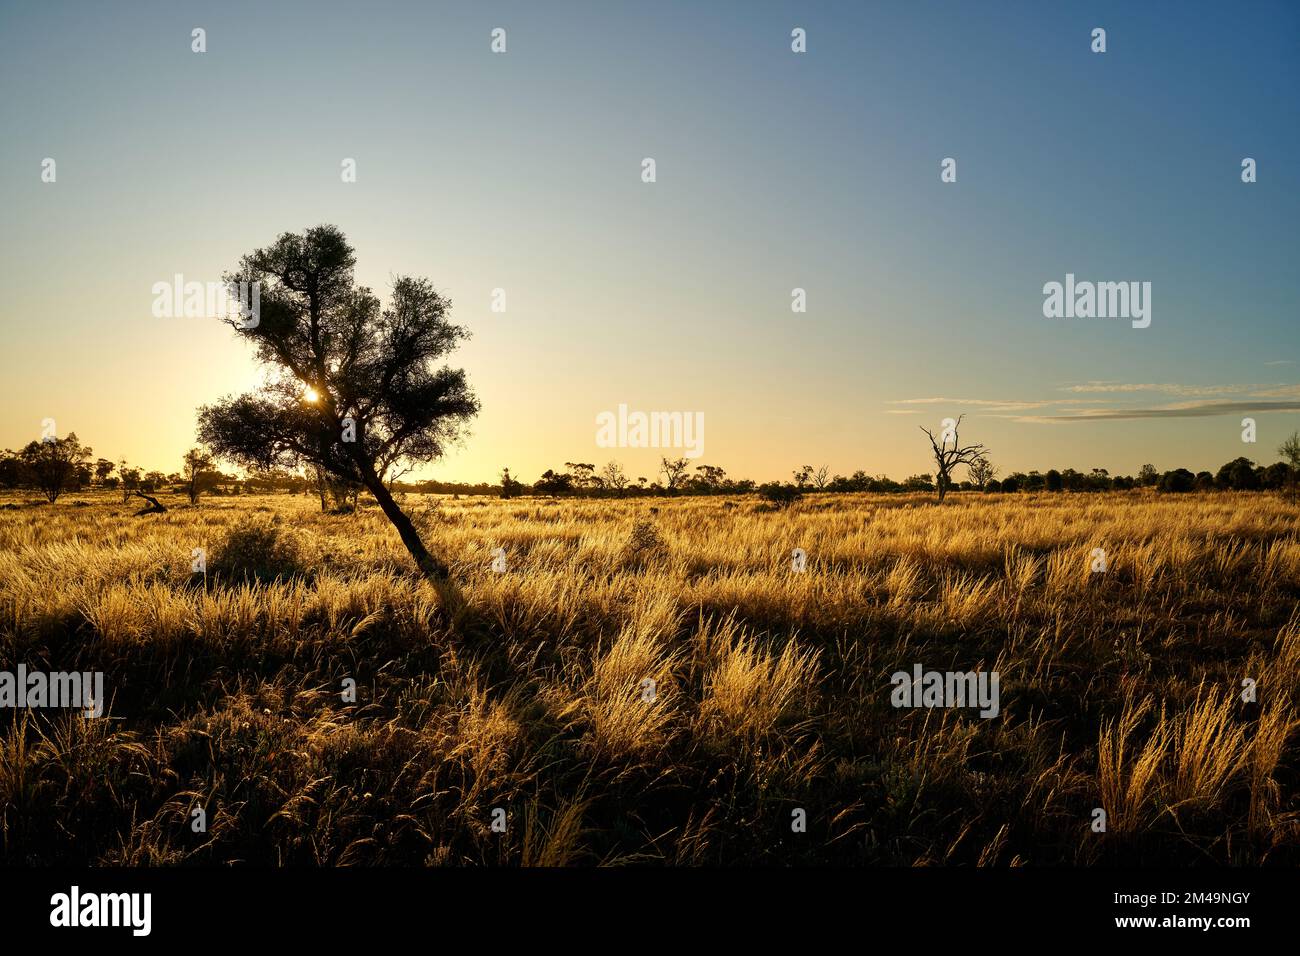 Sonnenuntergang hinter einem kleinen schmuddeligen Baum, umgeben von heimischem SpeerGras mit Hintergrundbeleuchtung, Austrostipa spp. Lage: Nortwestern Victoria, Australi Stockfoto